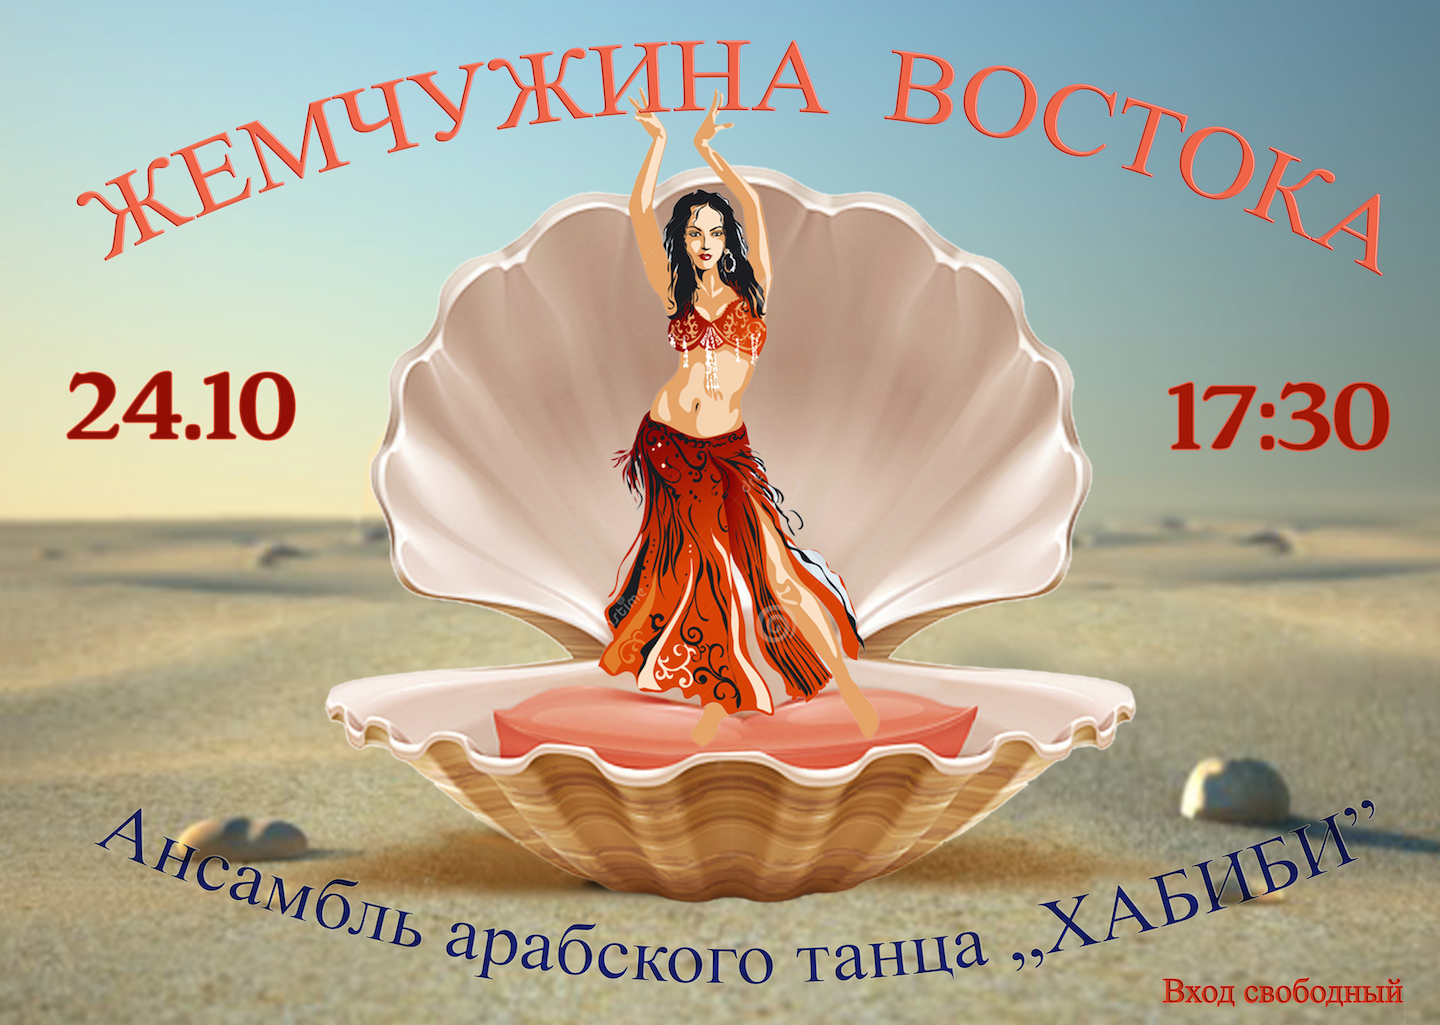 Жемчужина Востока концерт восточных танцев Хабиби 24 октября